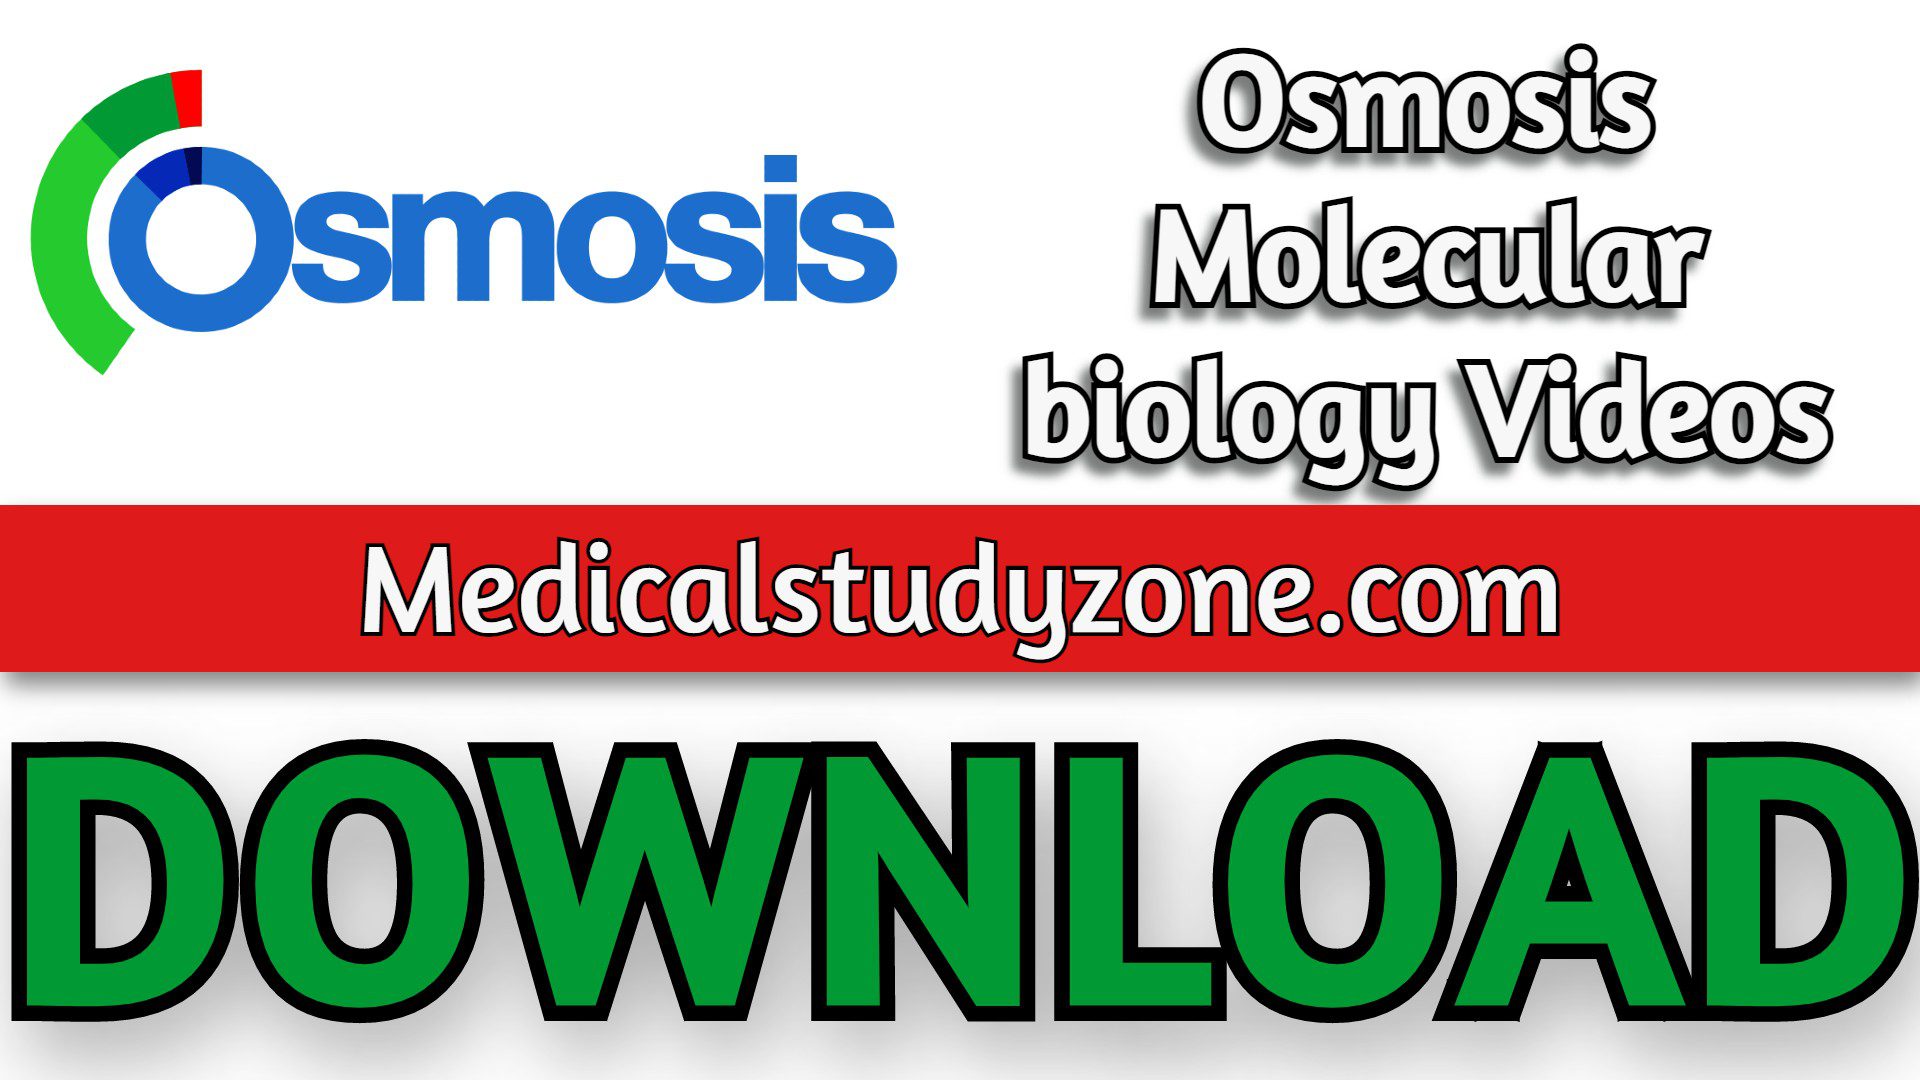 Osmosis Molecular biology Videos 2021 Free Download